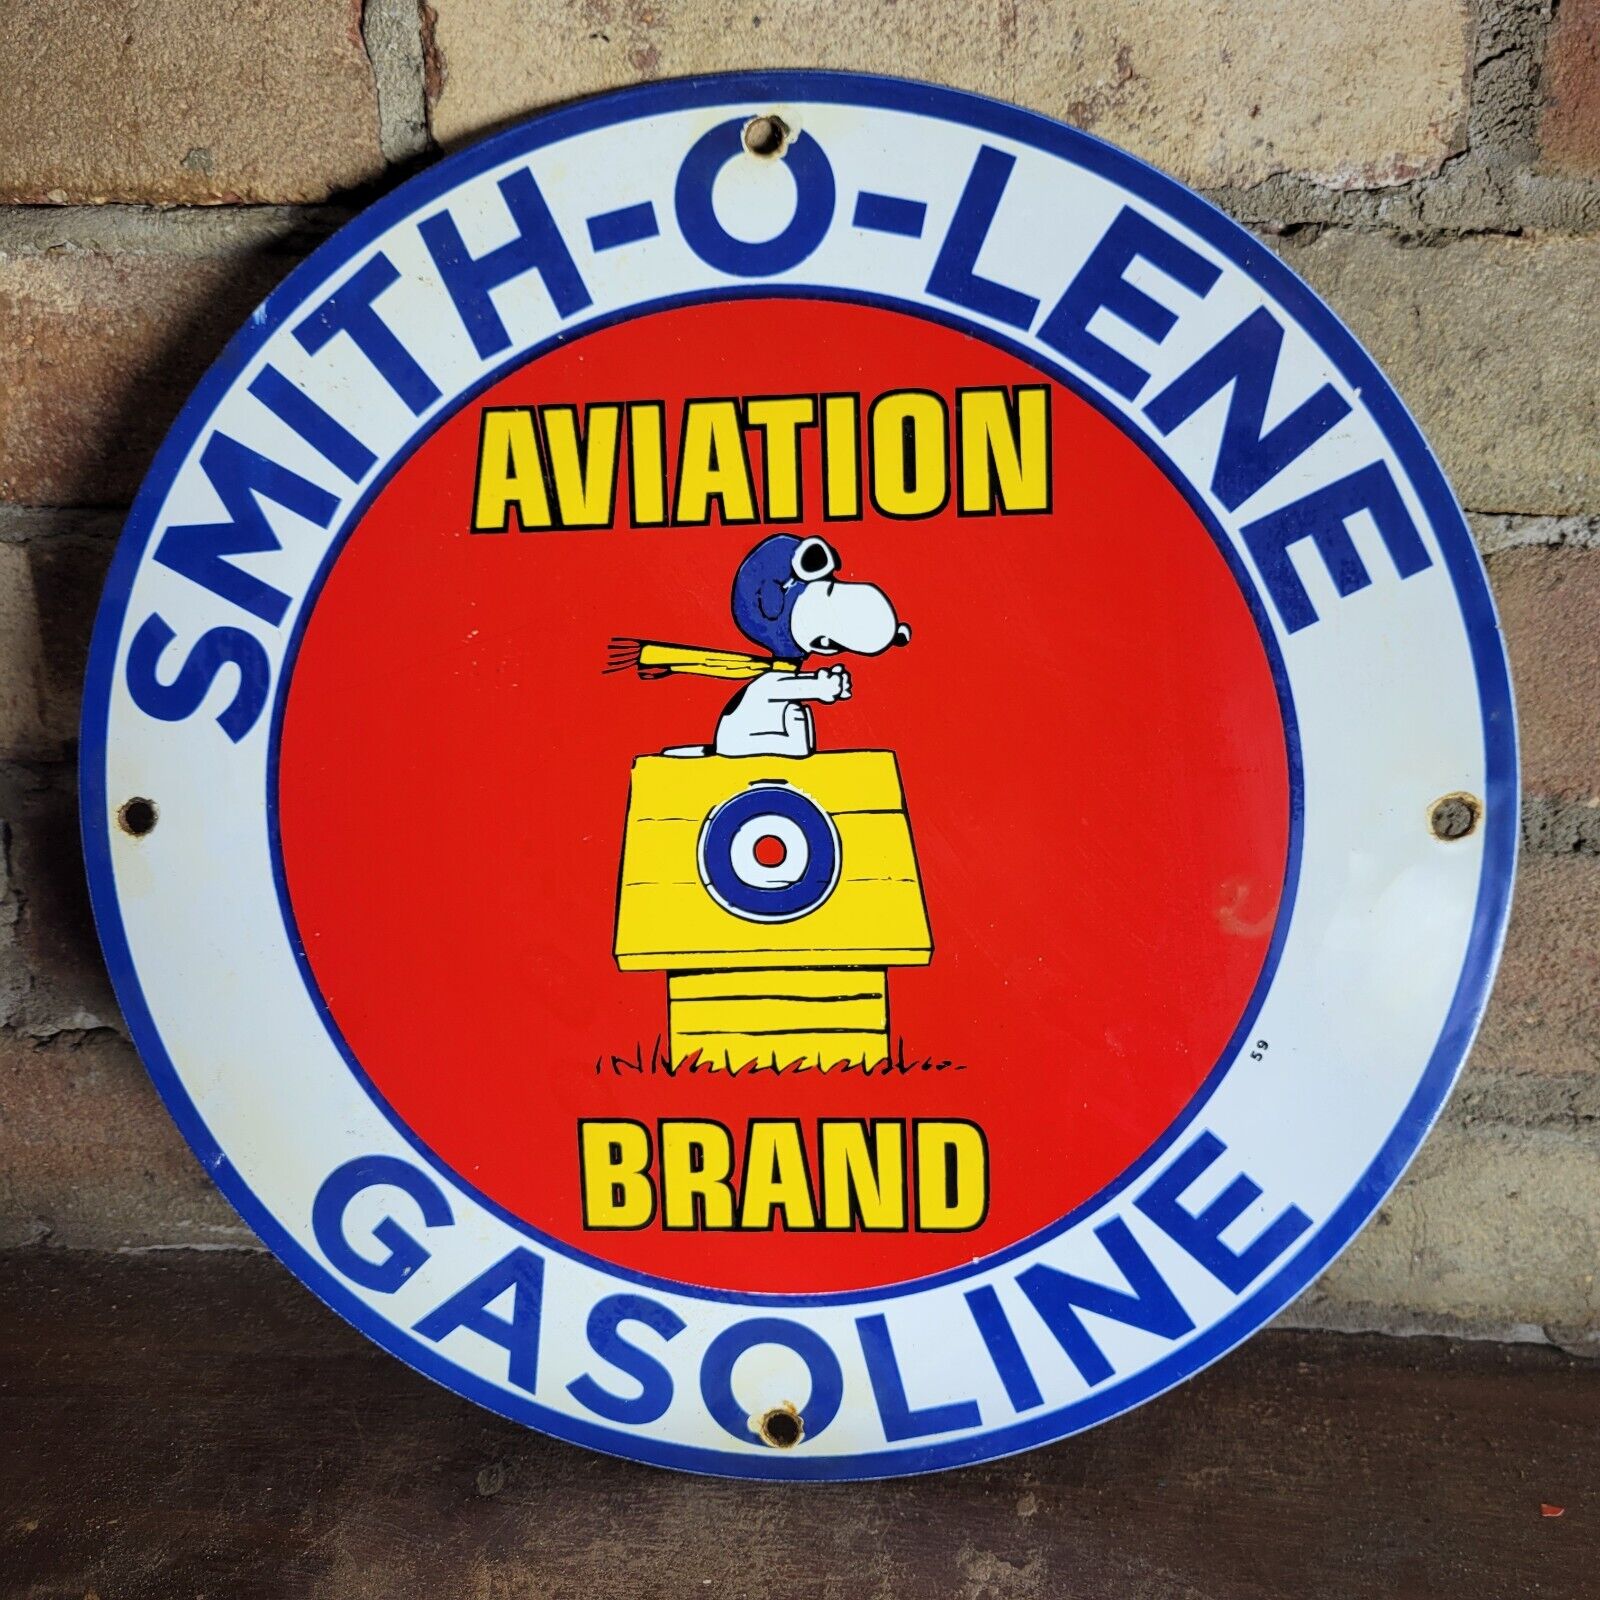 VINTAGE 1959 SMITH-O-LENE GASOLINE PORCELAIN GAS STATION PUMP MOTOR OIL SIGN 12